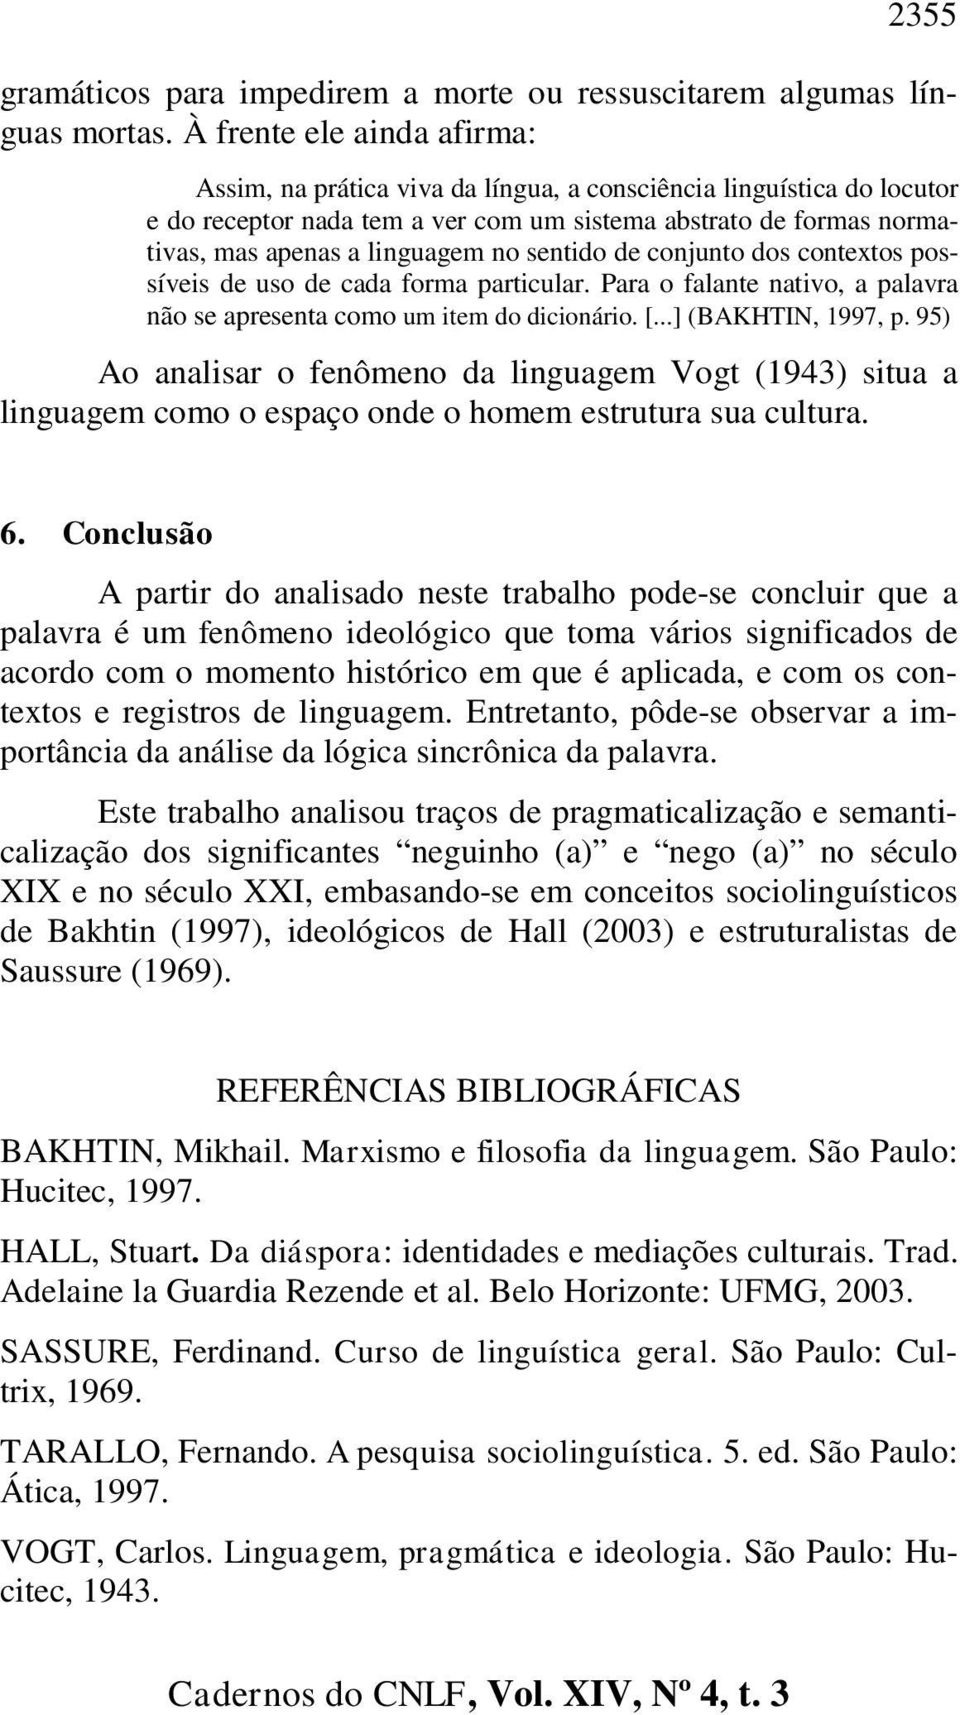 sentido de conjunto dos contextos possíveis de uso de cada forma particular. Para o falante nativo, a palavra não se apresenta como um item do dicionário. [...] (BAKHTIN, 1997, p.